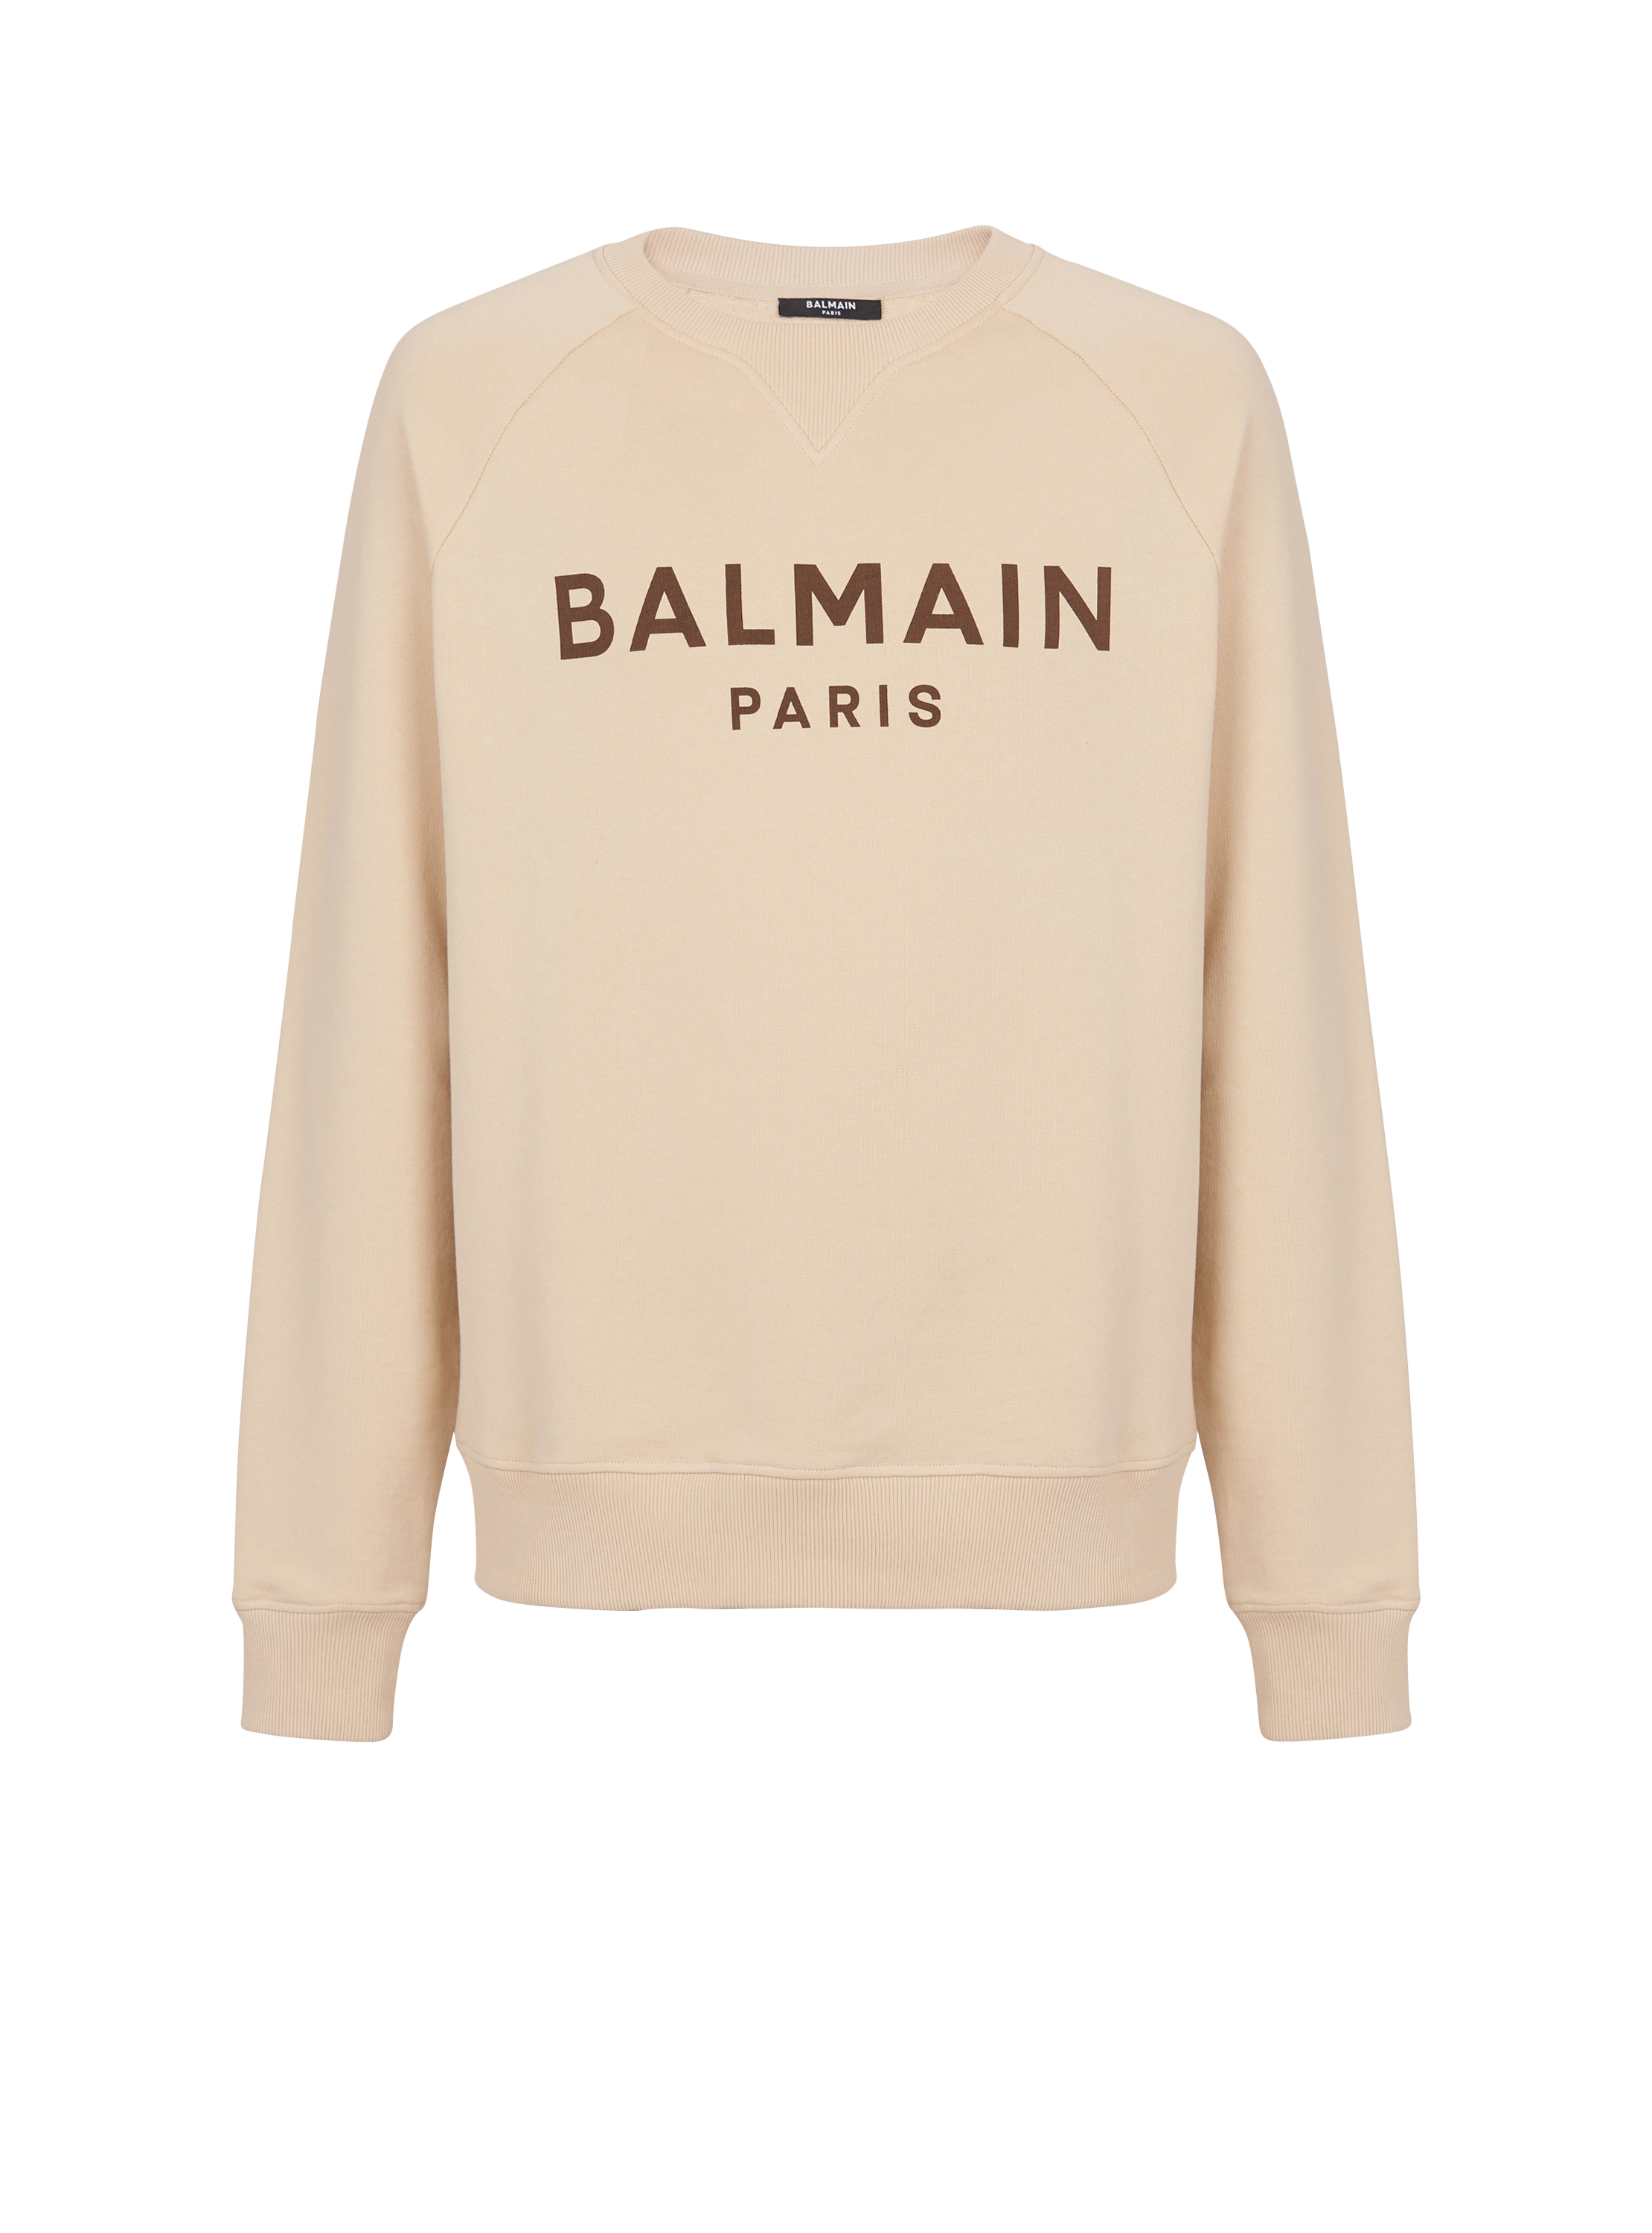 Balmain Paris printed sweatshirt, beige, hi-res